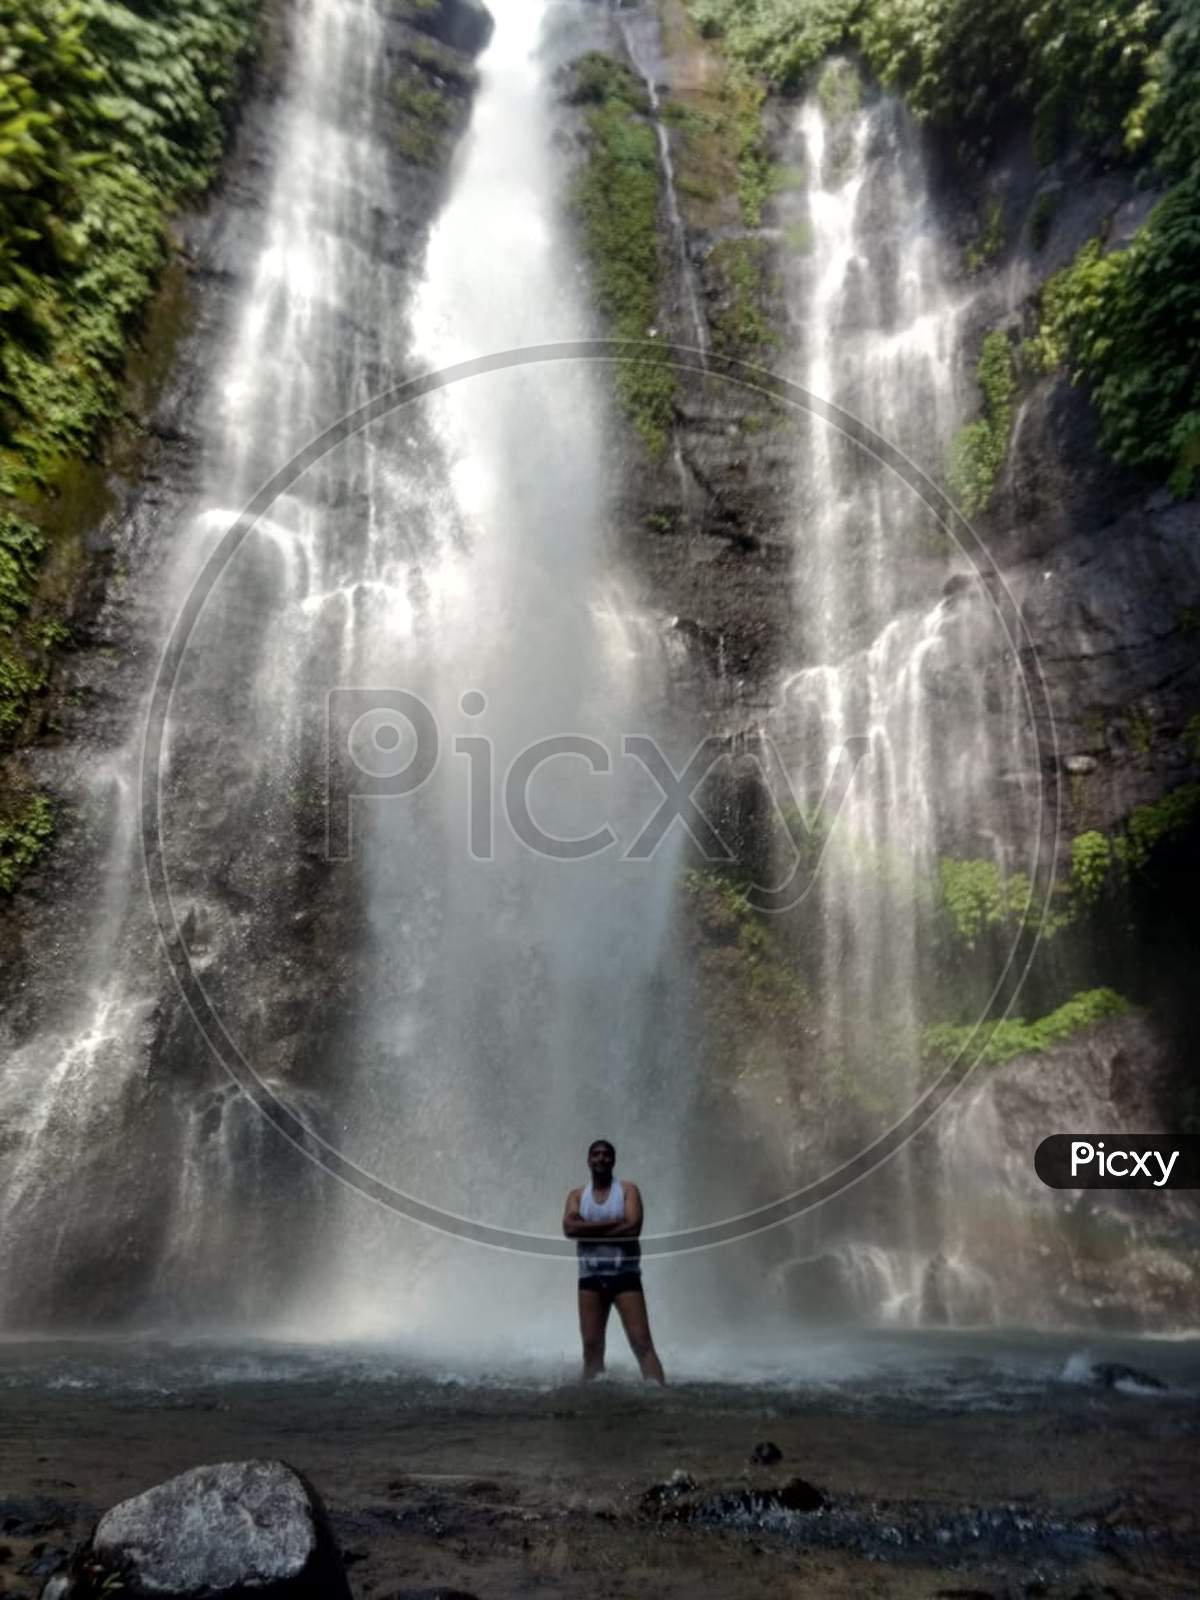 Sekumpul & Fiji Waterfalls